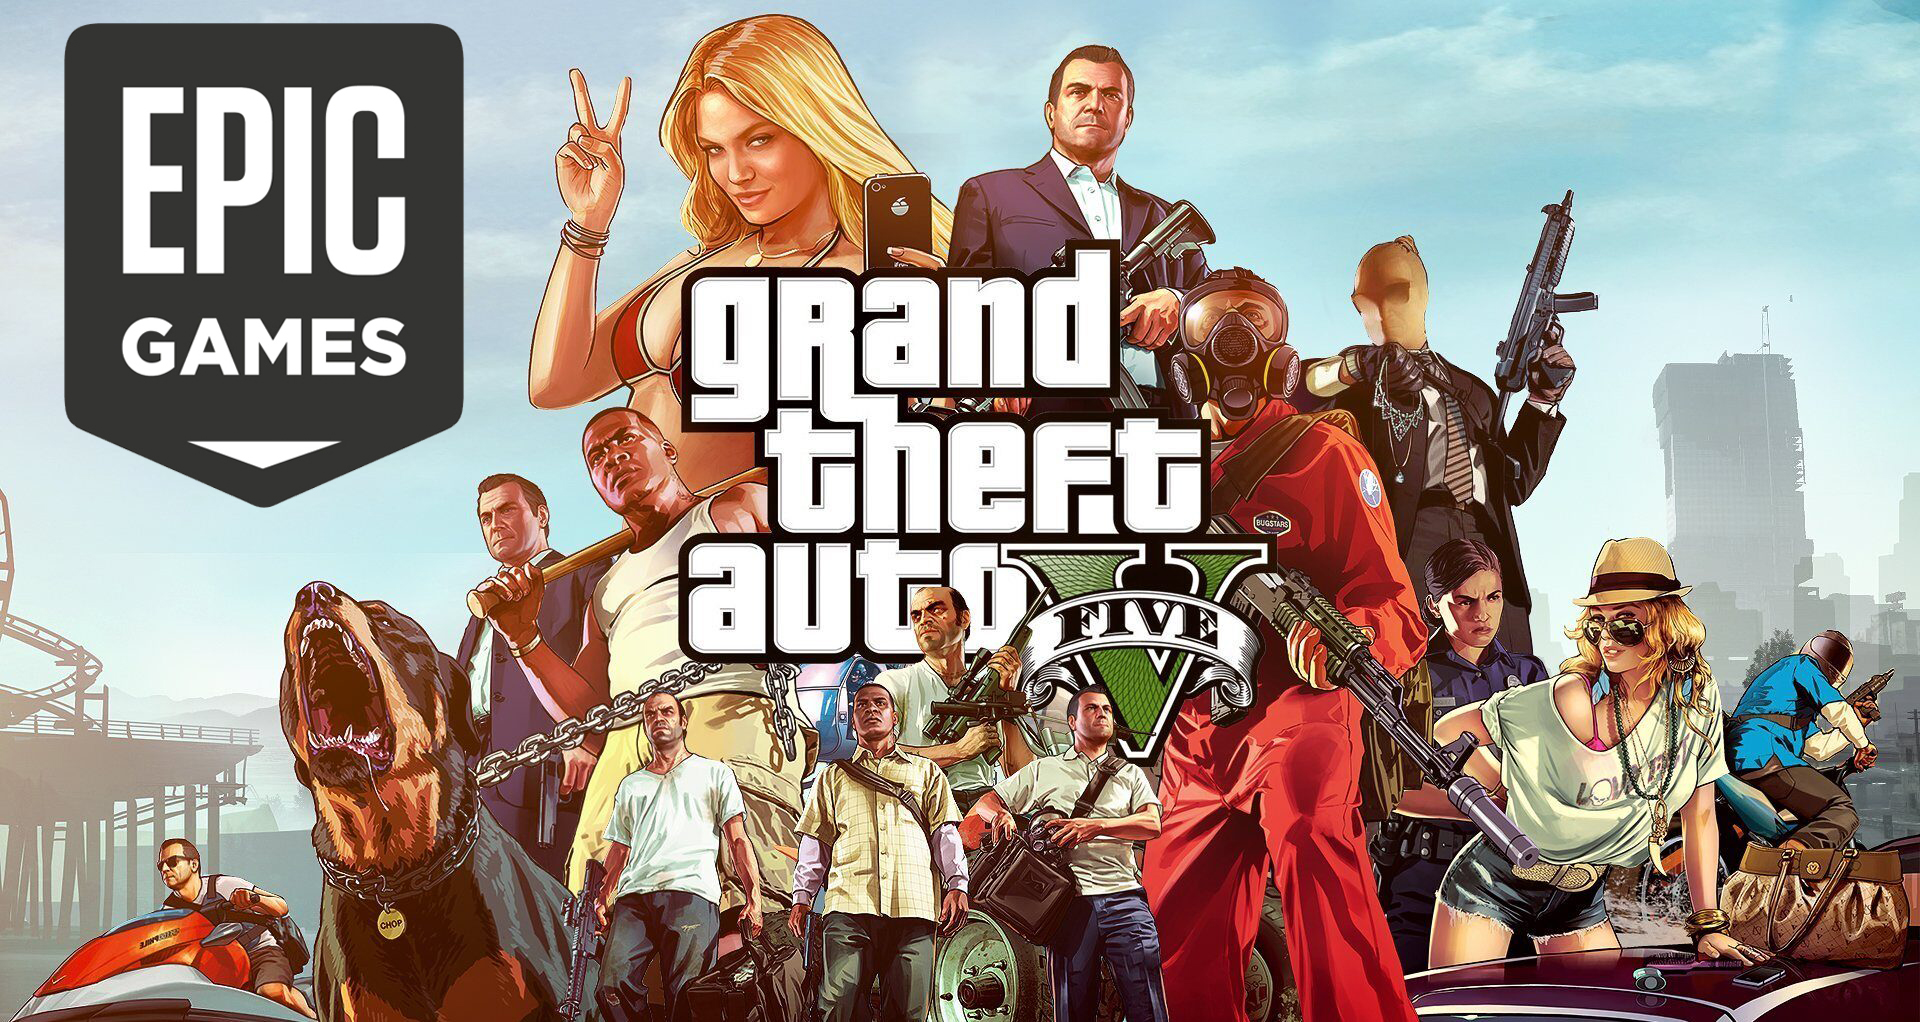 Epic games grand. ГТА 5 на ПК купить Epic games. Почему ГТА 5 пропала из ЭПИК геймс. Grand Theft auto v как найти в ЭПИК геймс.